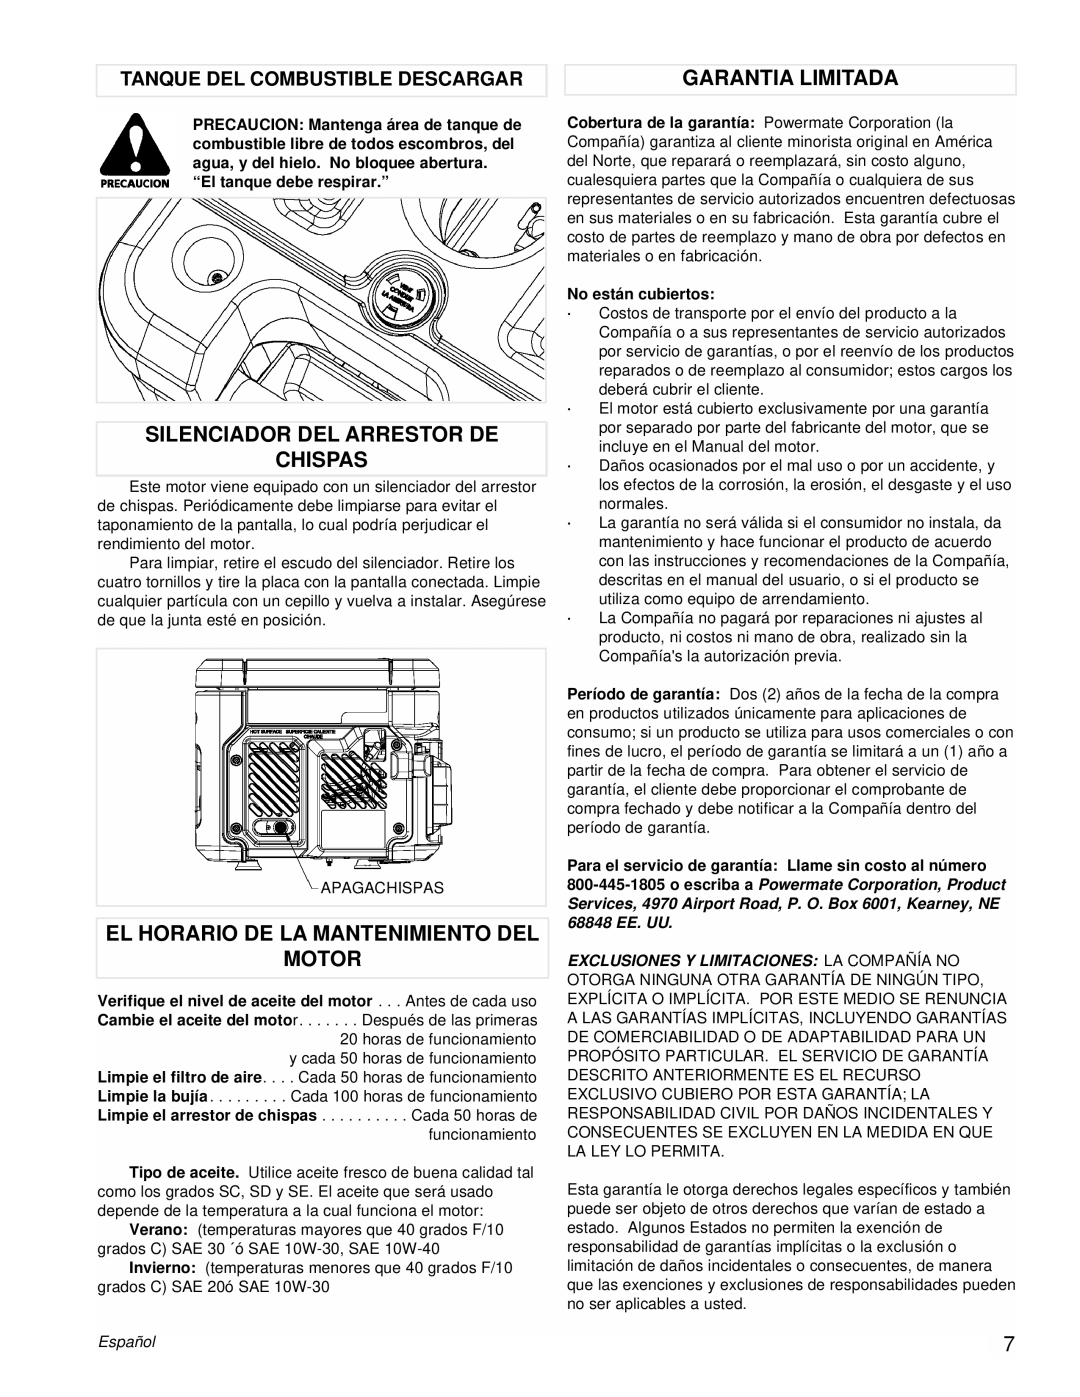 Powermate PM0431800.01 Silenciador Del Arrestor De Chispas, El Horario De La Mantenimiento Del Motor, Garantia Limitada 